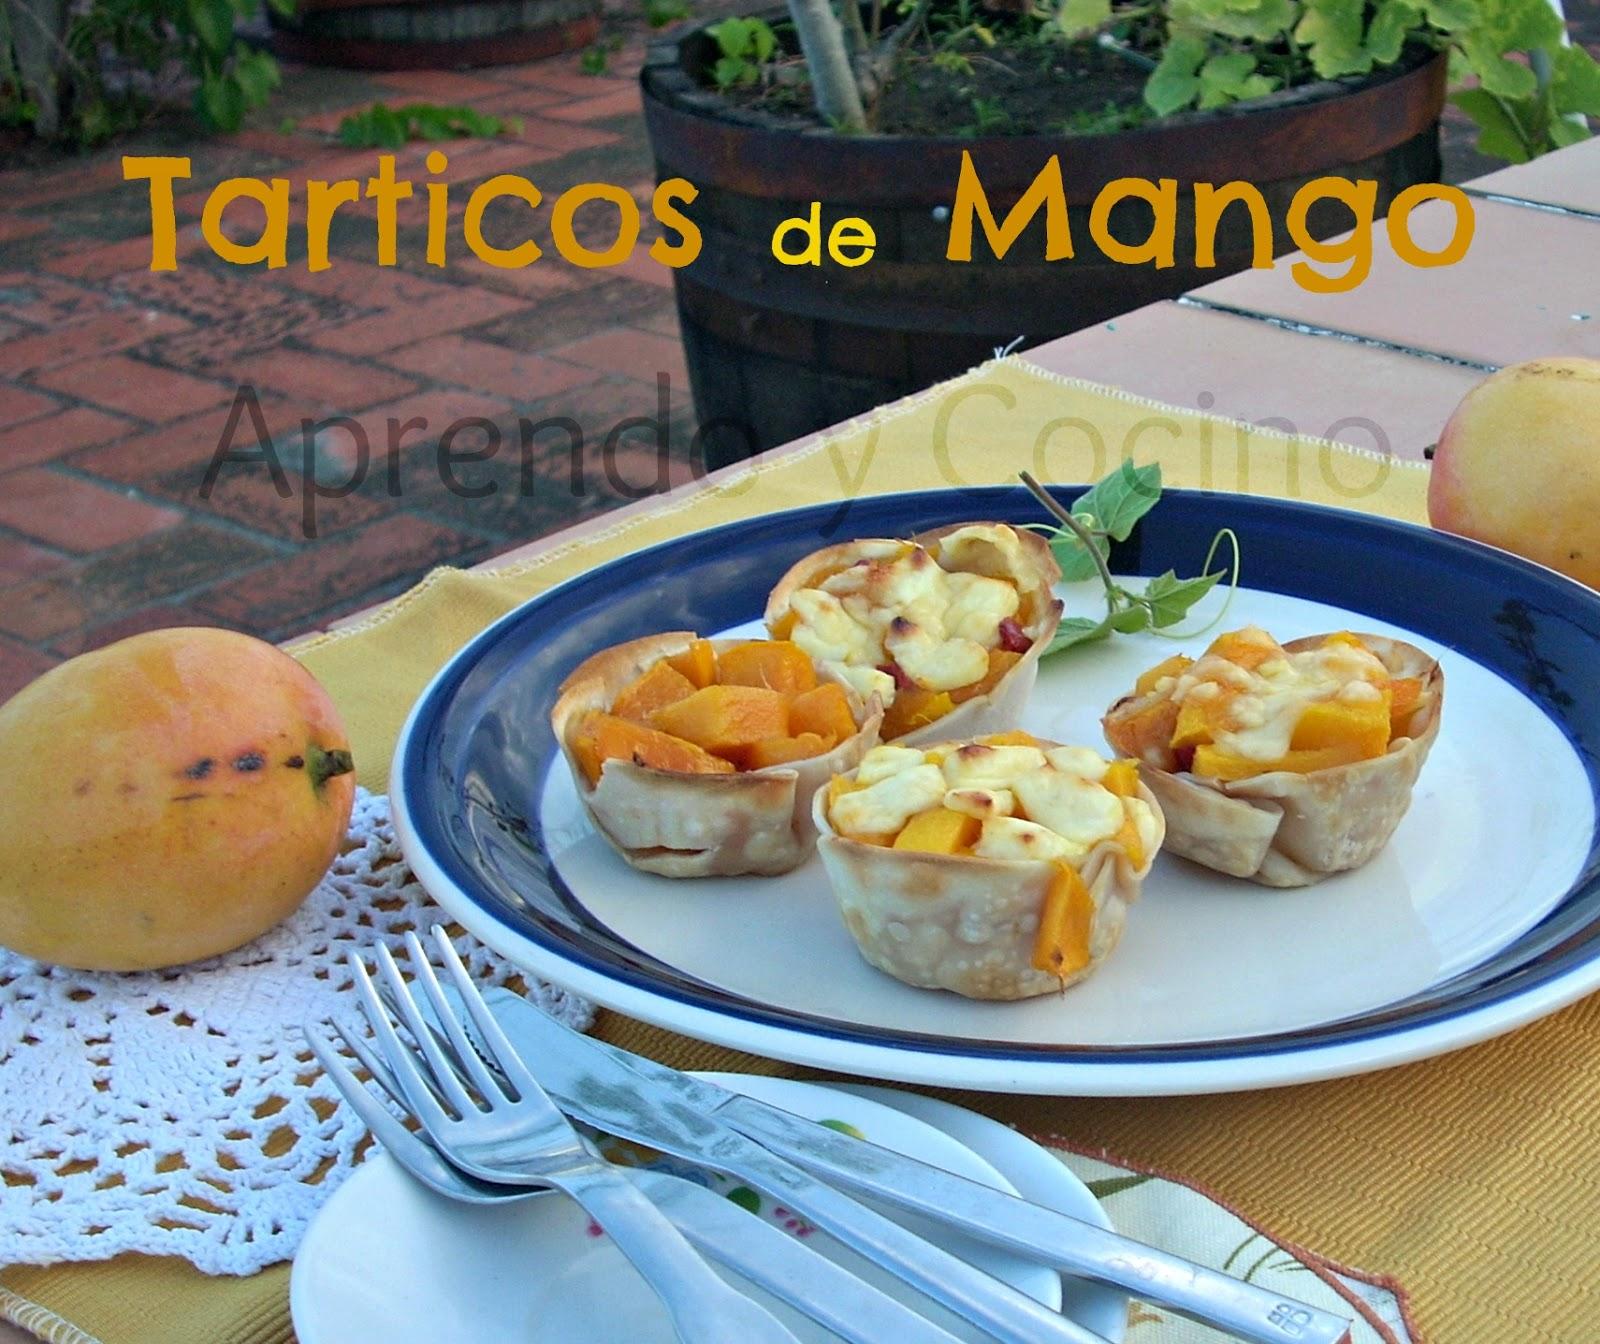 Tartaletas de Mango